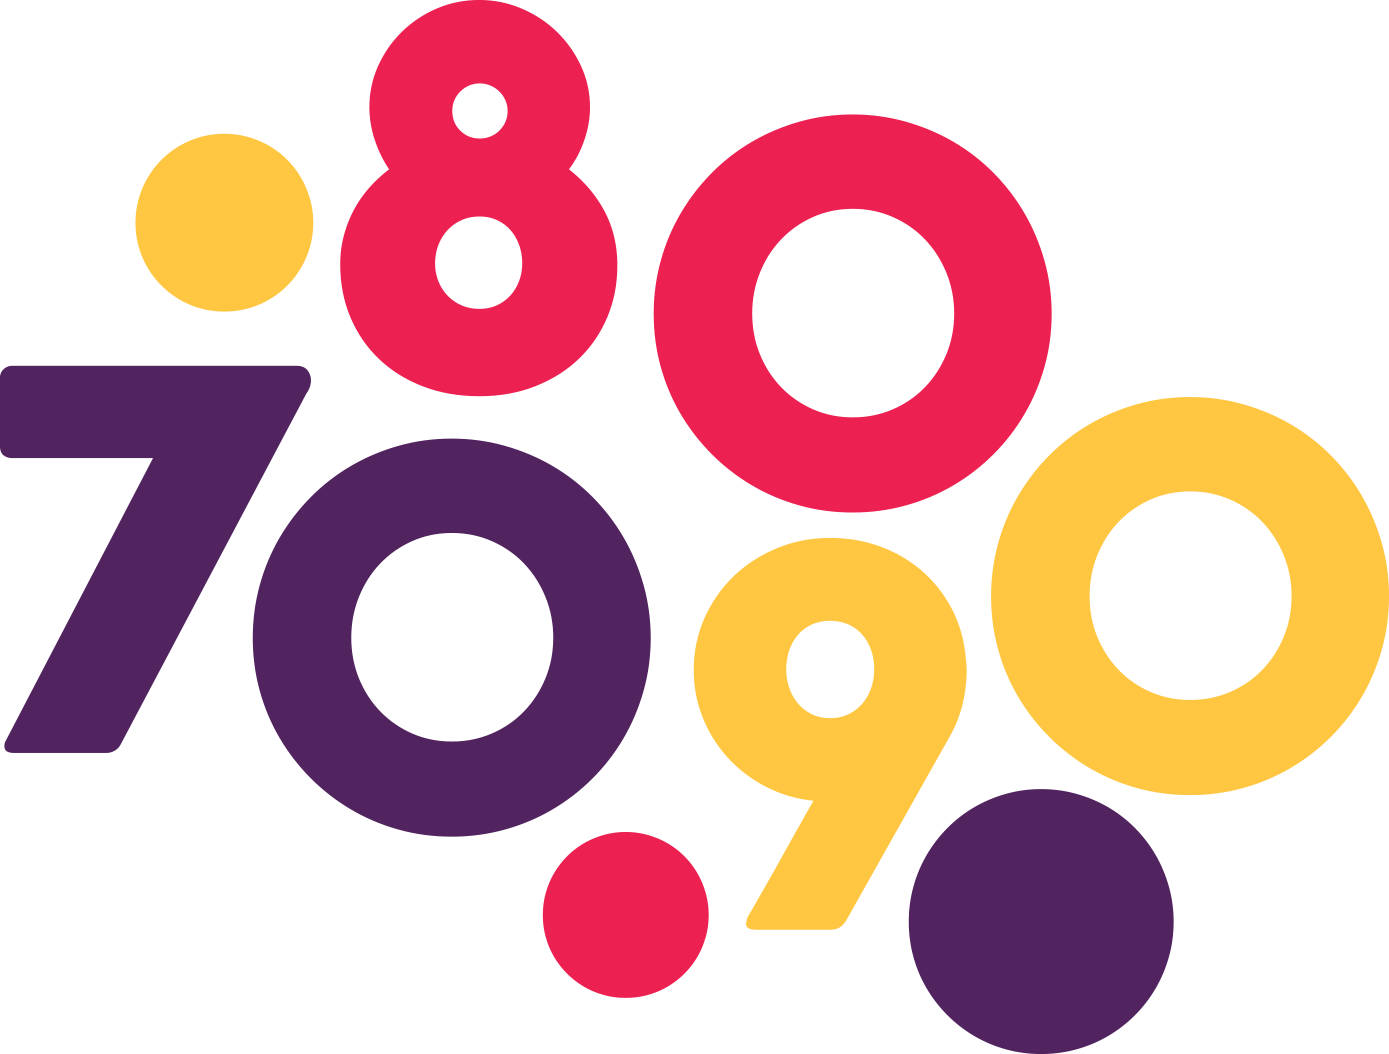 Сборка 80 90. 80е надпись. Дискотека 80-90 в прозрачном фоне. Надпись 80-90. 90-Е логотип.